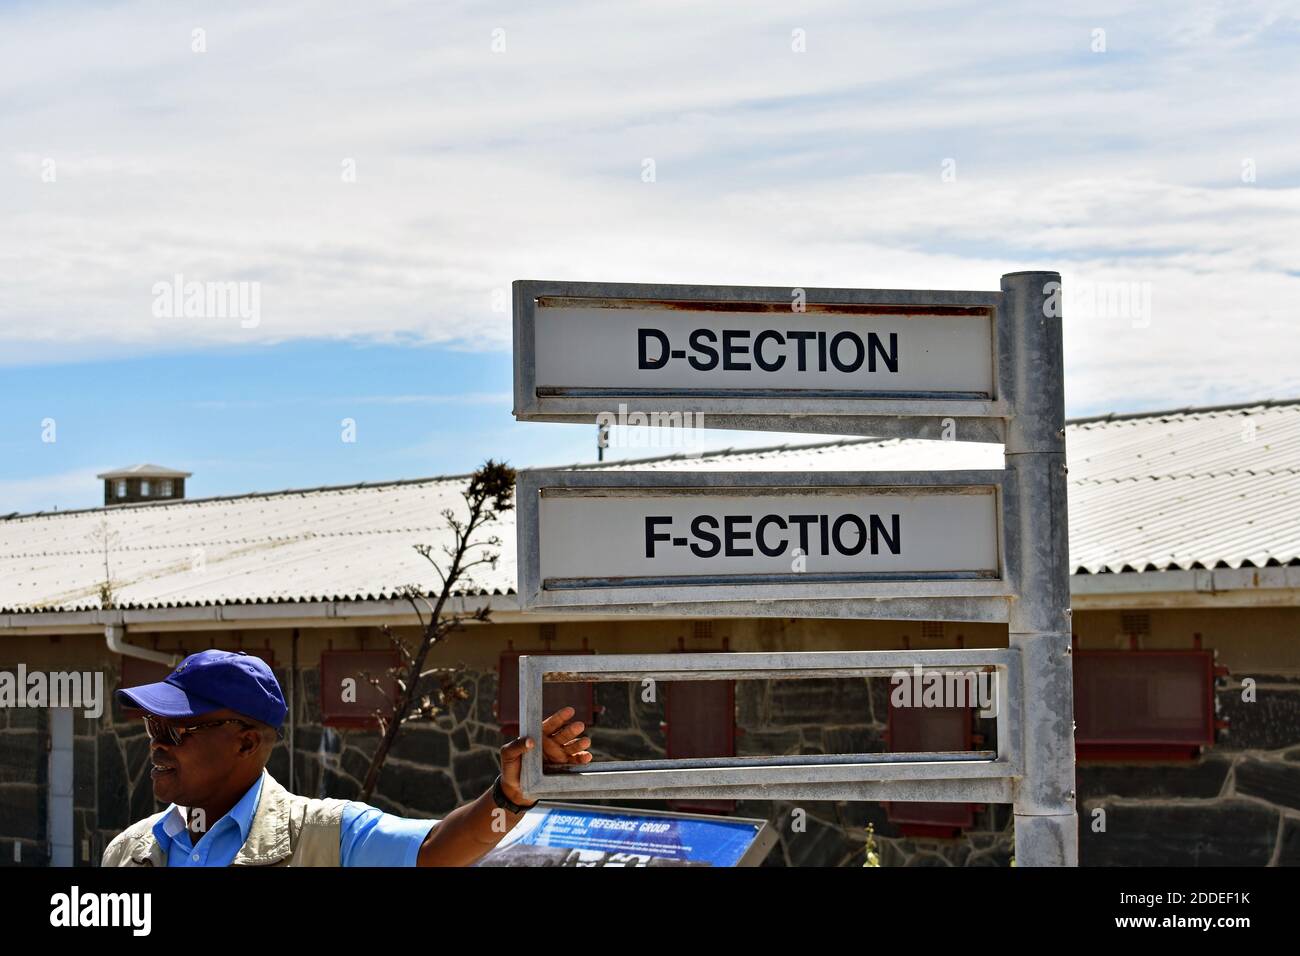 Una guida turistica si appoggia su un cartello che indica la strada per la sezione D e F, diverse ali nella prigione di massima sicurezza sull'isola di Robben, Città del Capo. Foto Stock